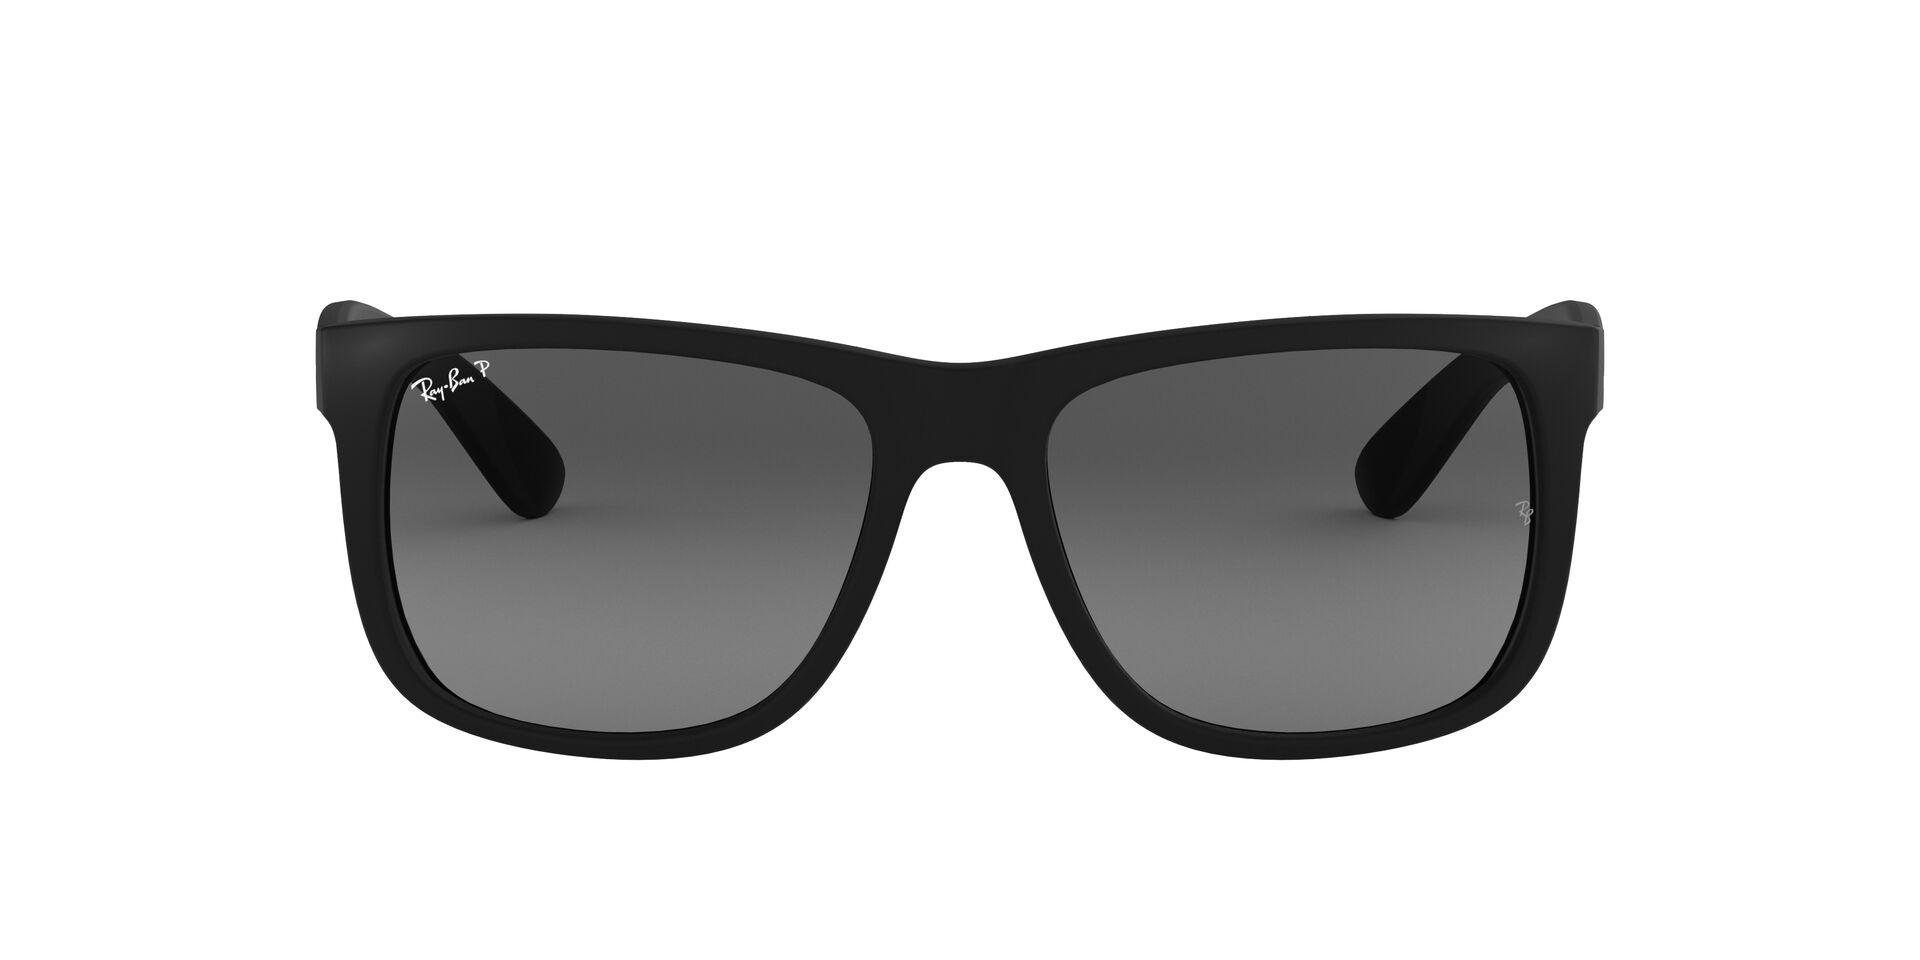 Mắt Kính Ray-Ban Justin - RB4165F 622/T3 -Sunglasses